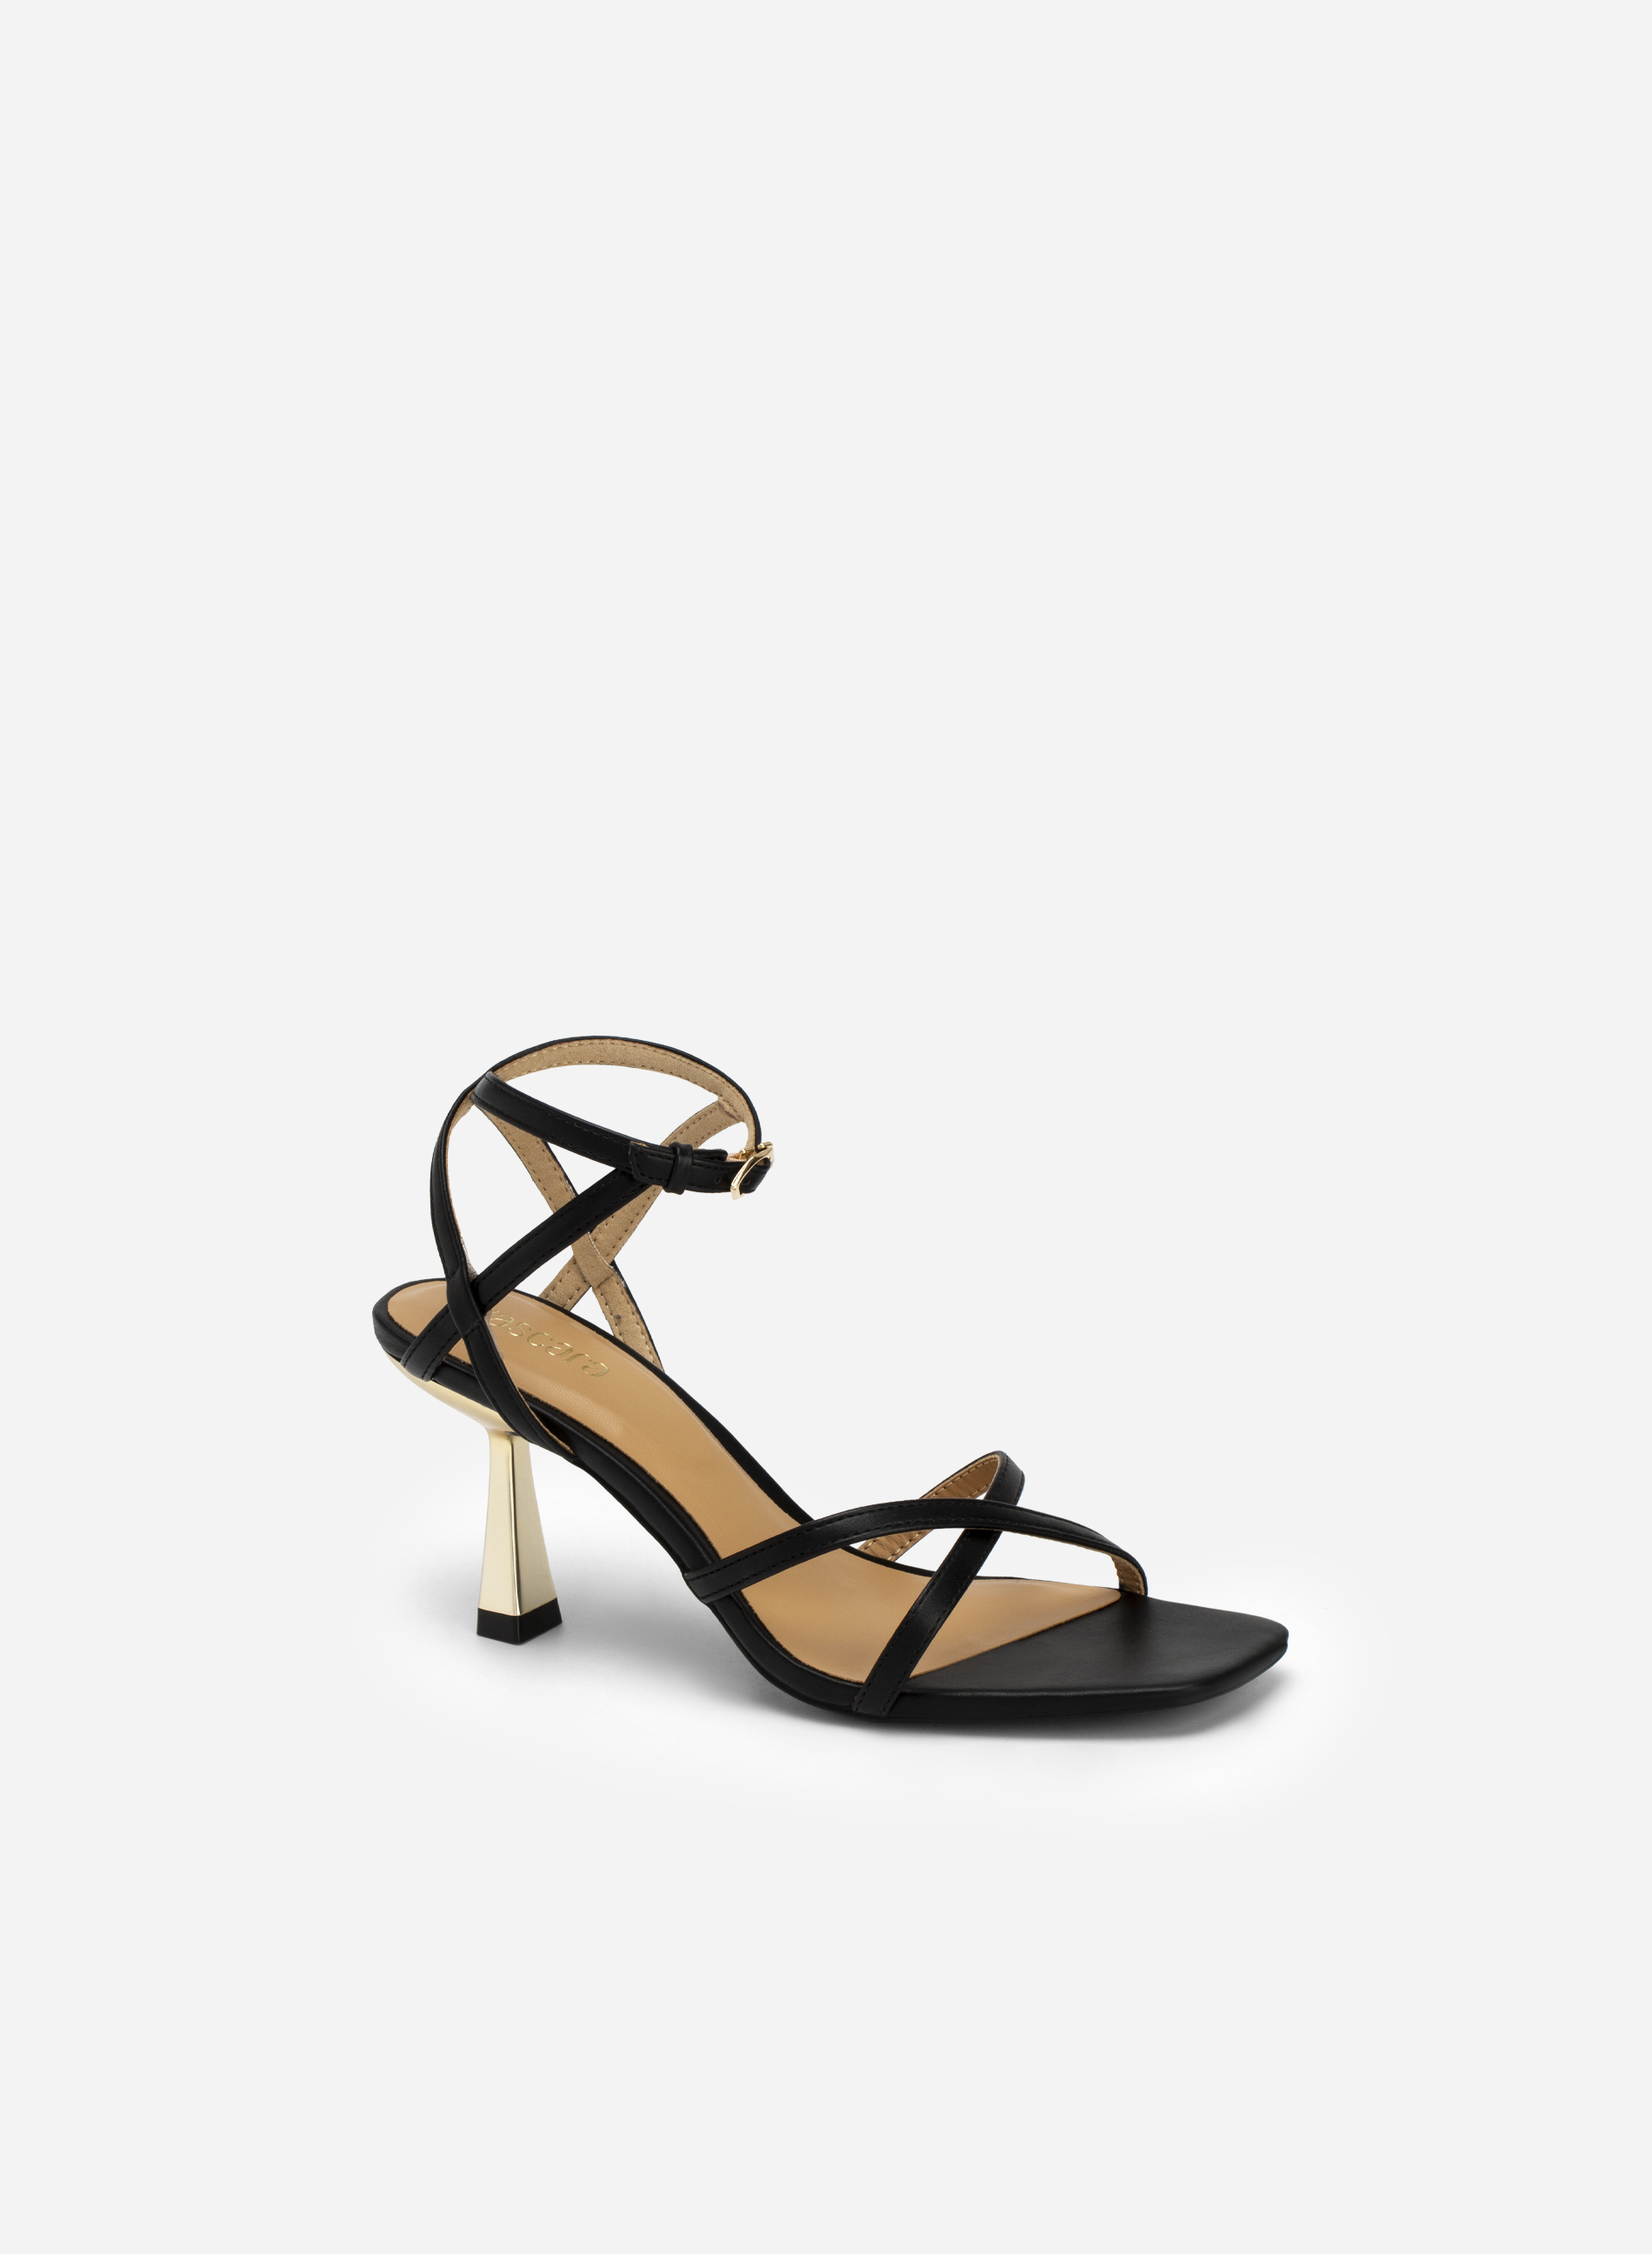 Cross Strap Golden Spool Heel Sandals - PUM 0719 - Black | VASCARA